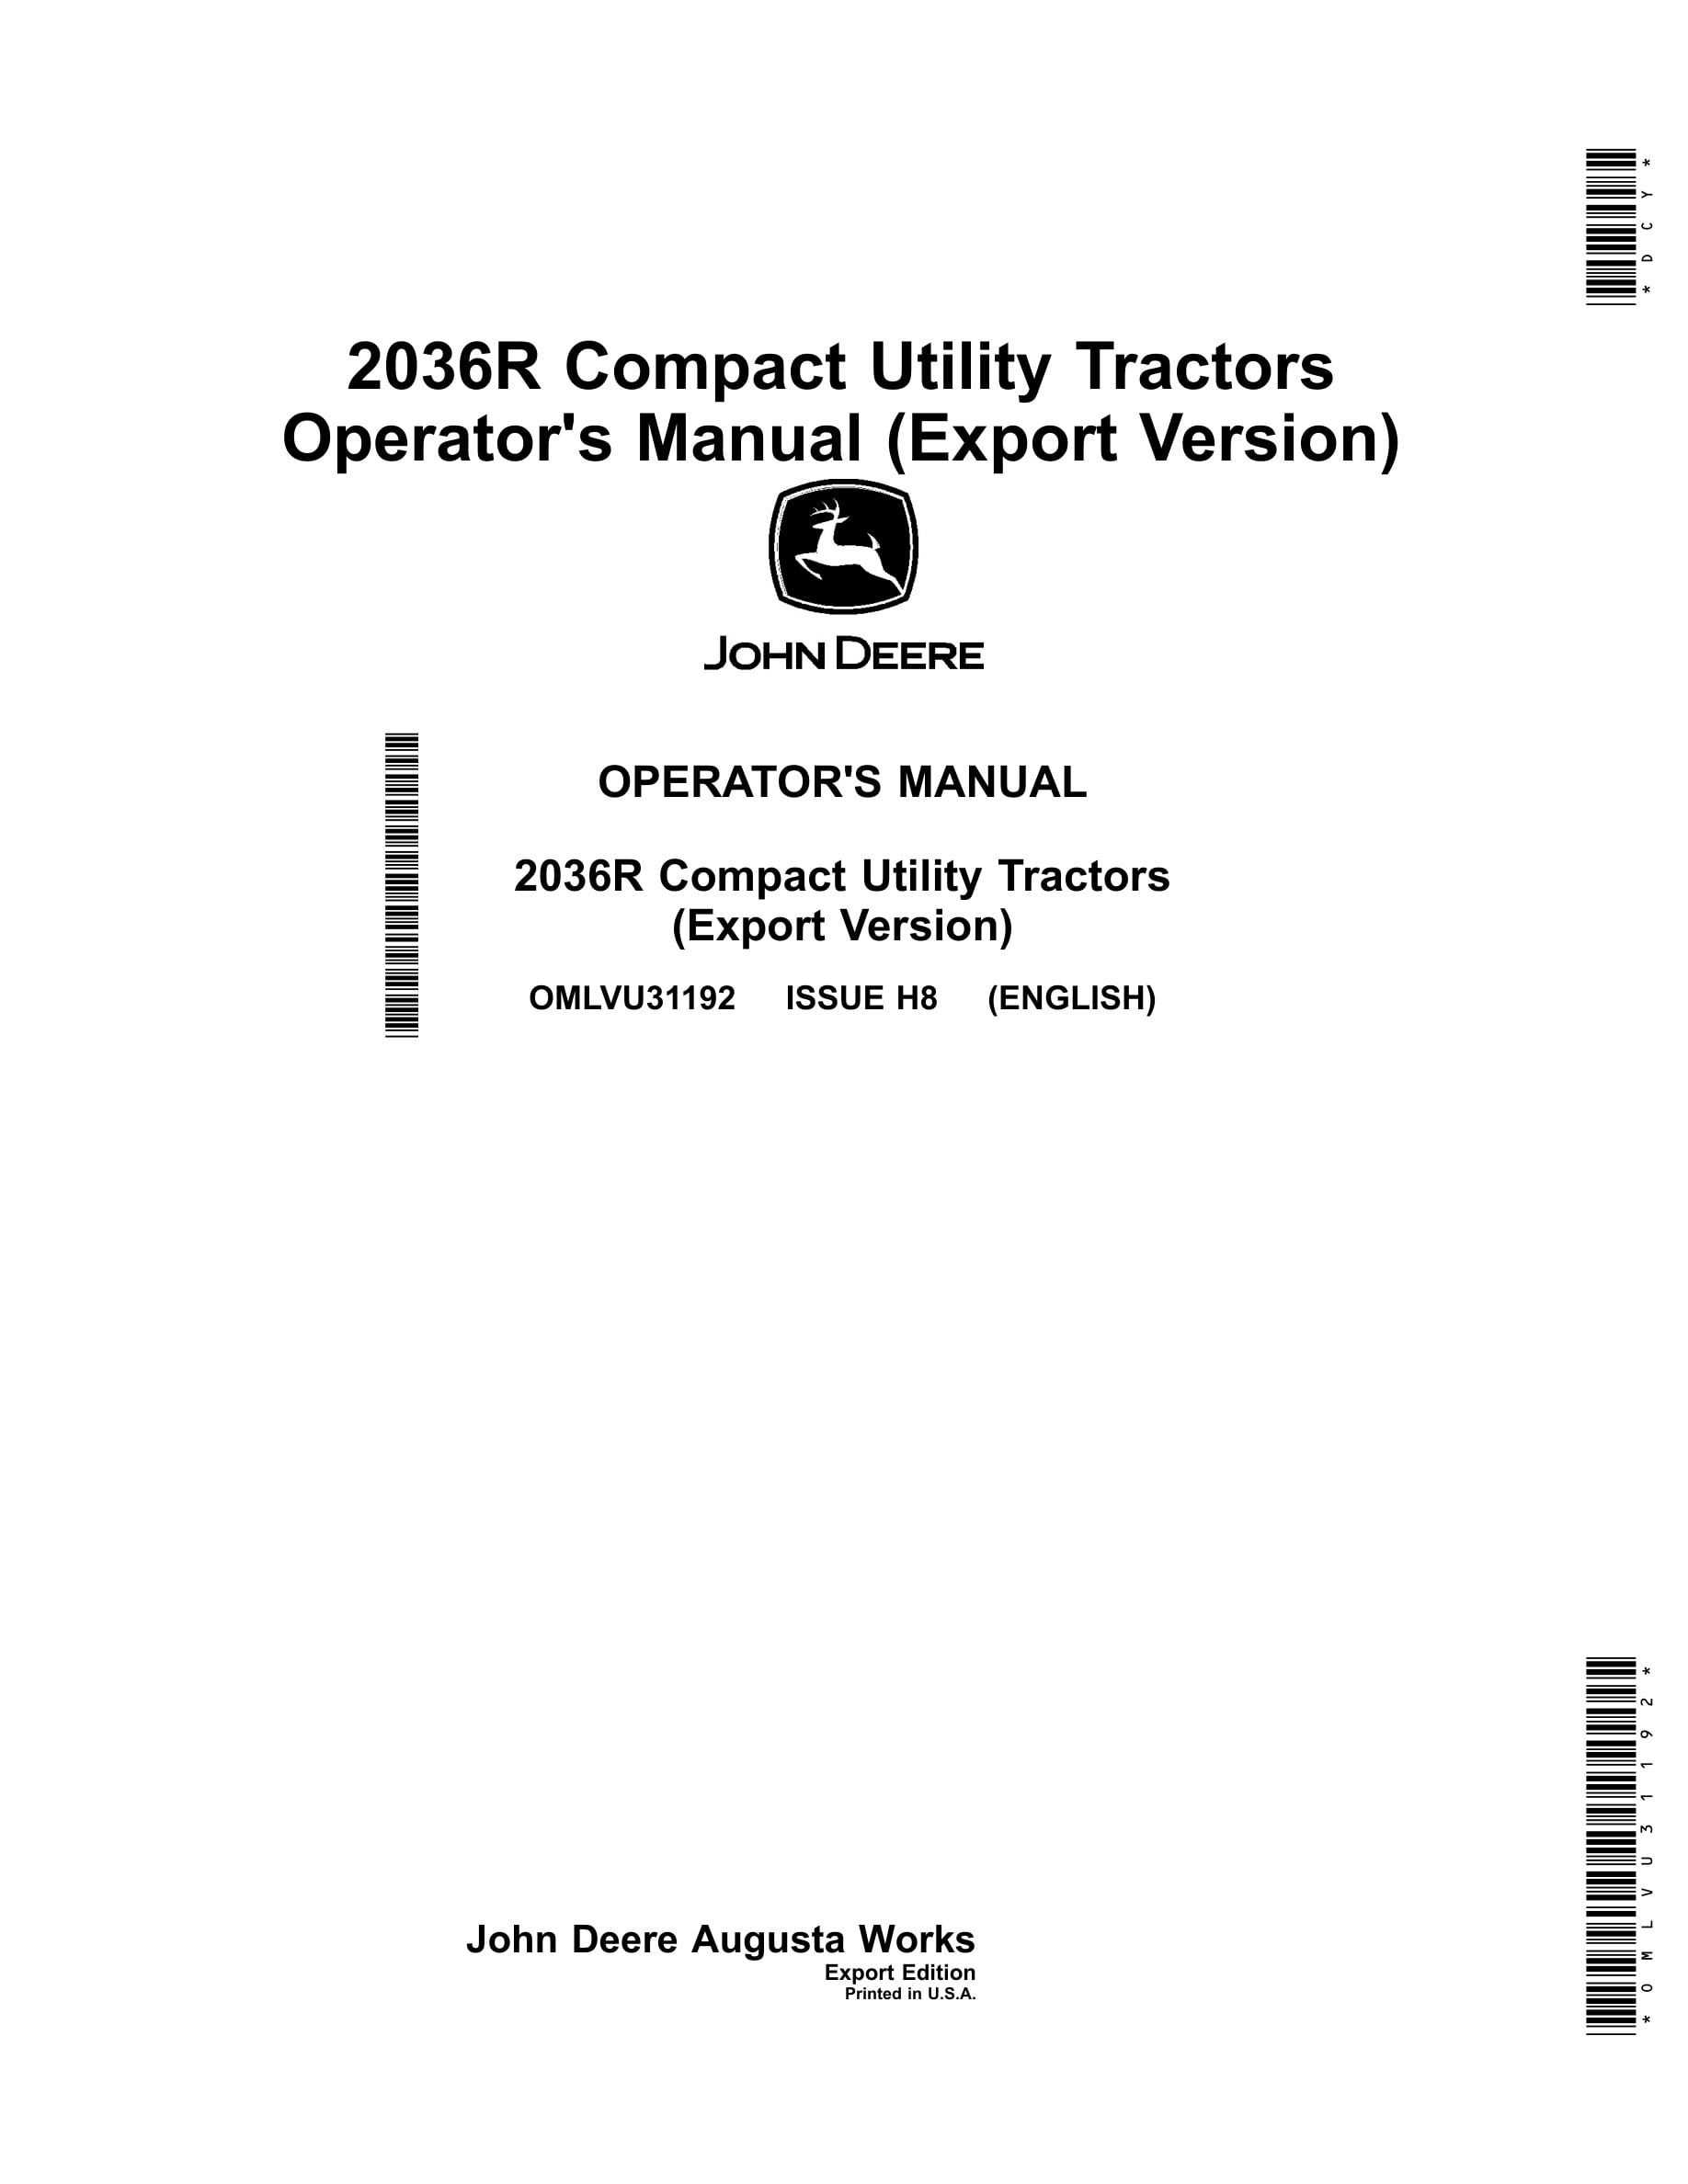 John Deere 2036r Compact Utility Tractors Operator Manuals OMLVU31192-1